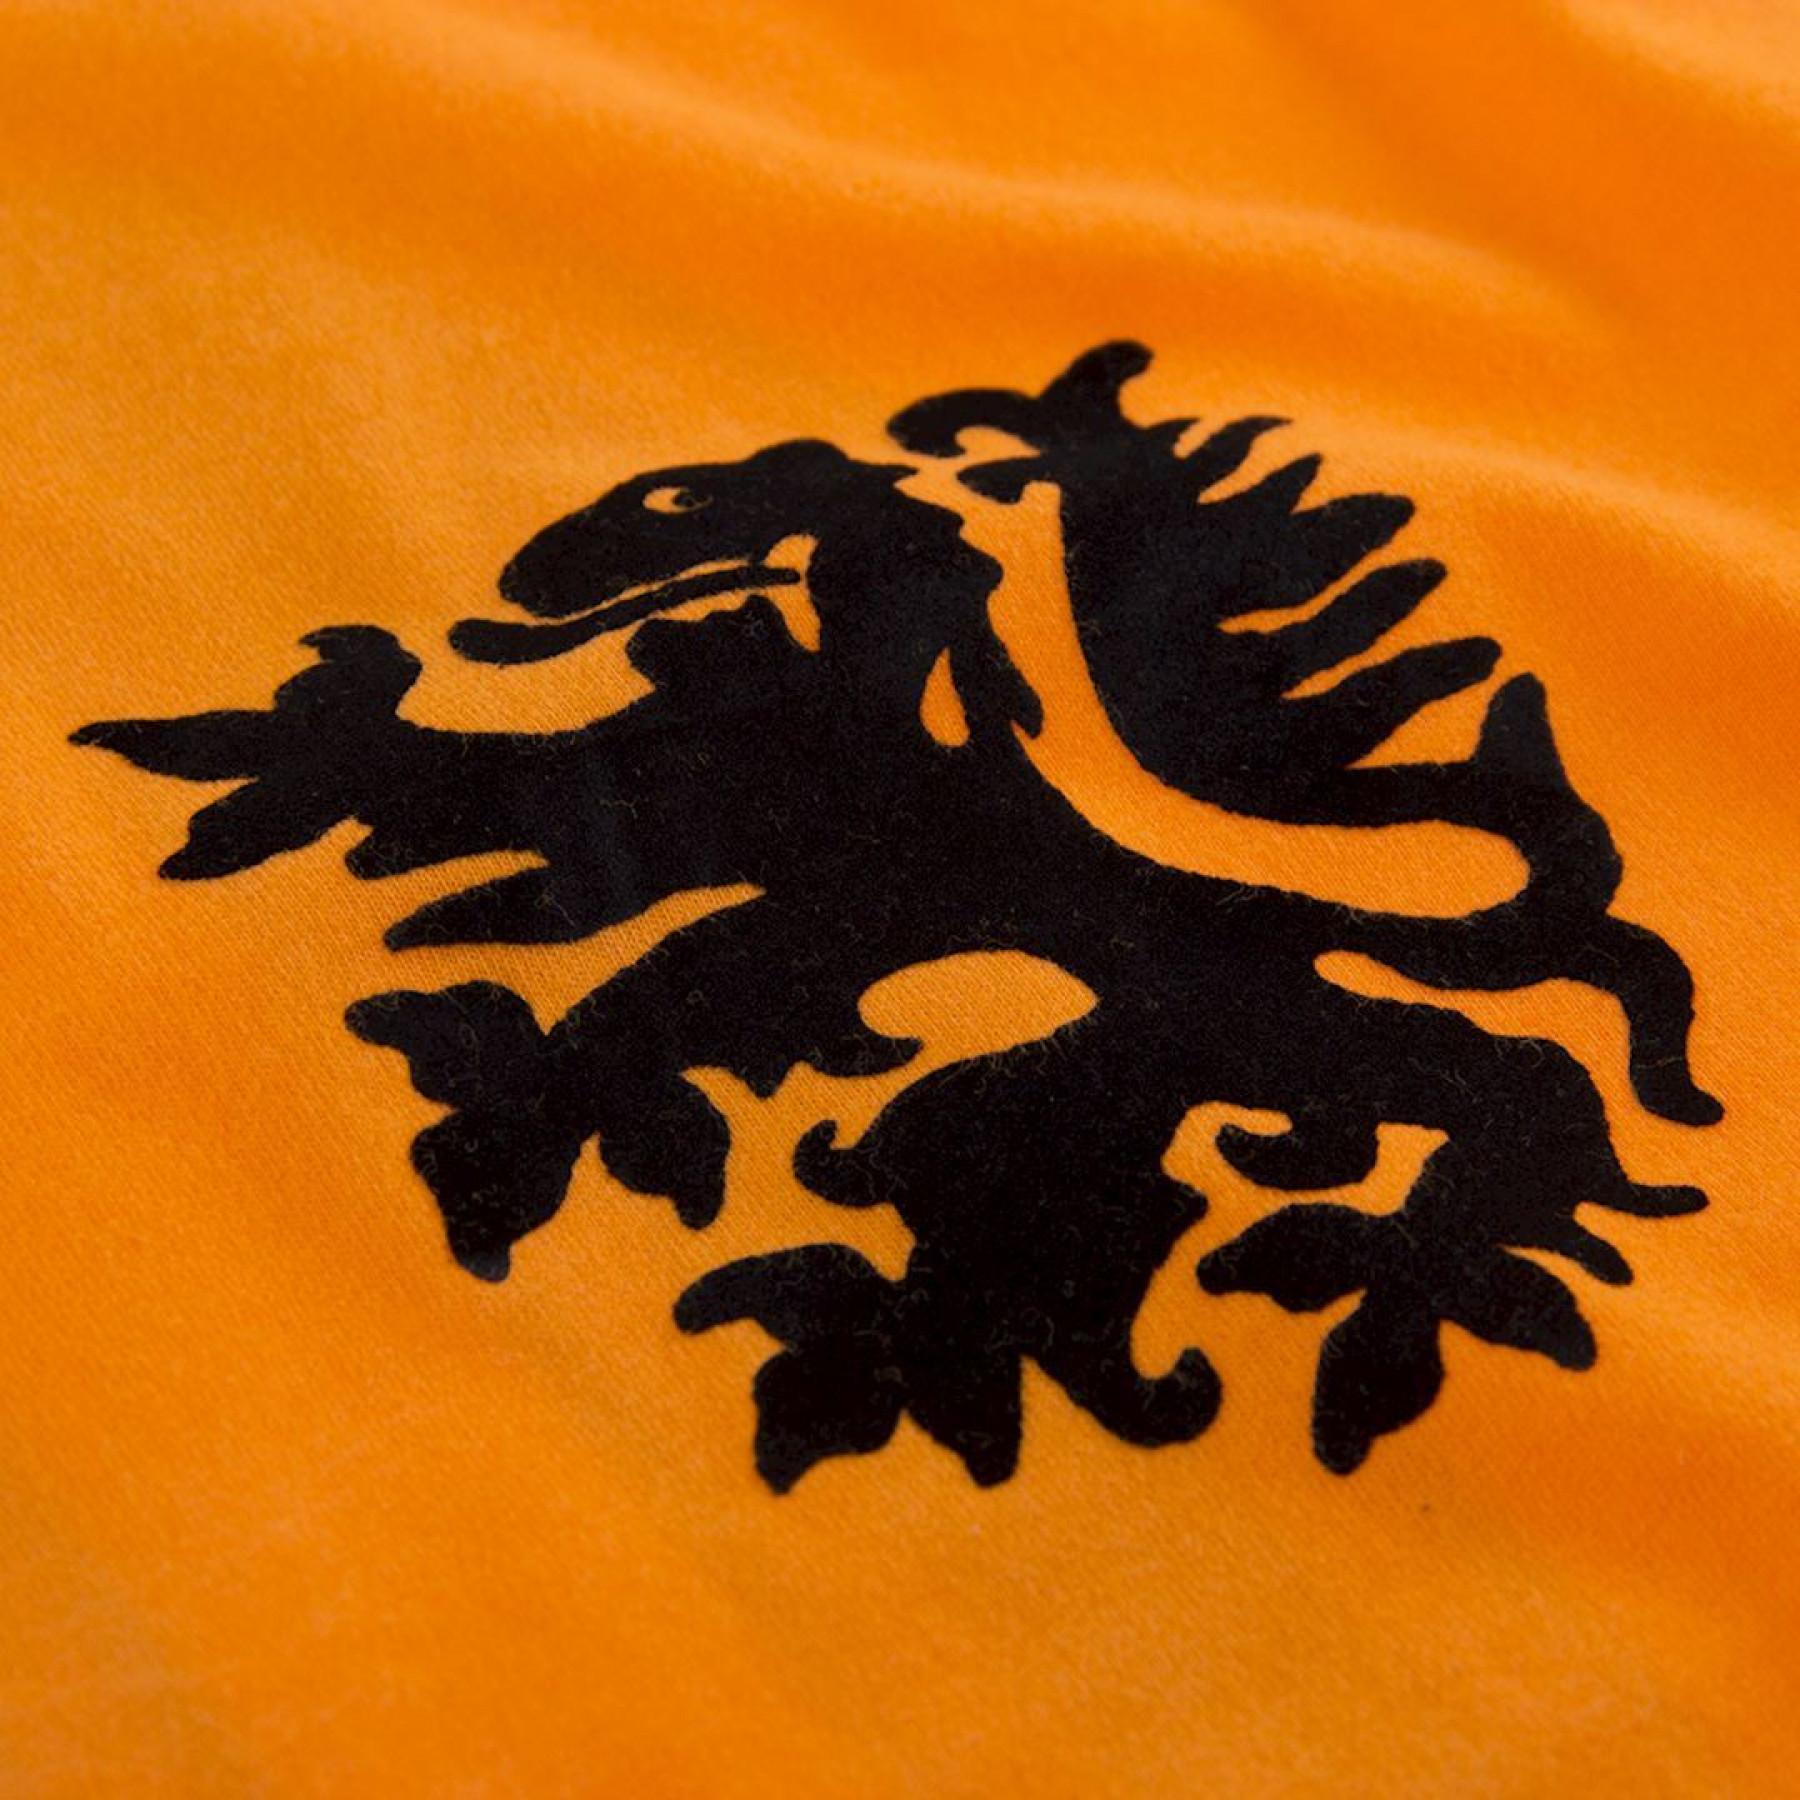 T-Shirt Rundhalsausschnitt e n fant Copa  Pays-Bas